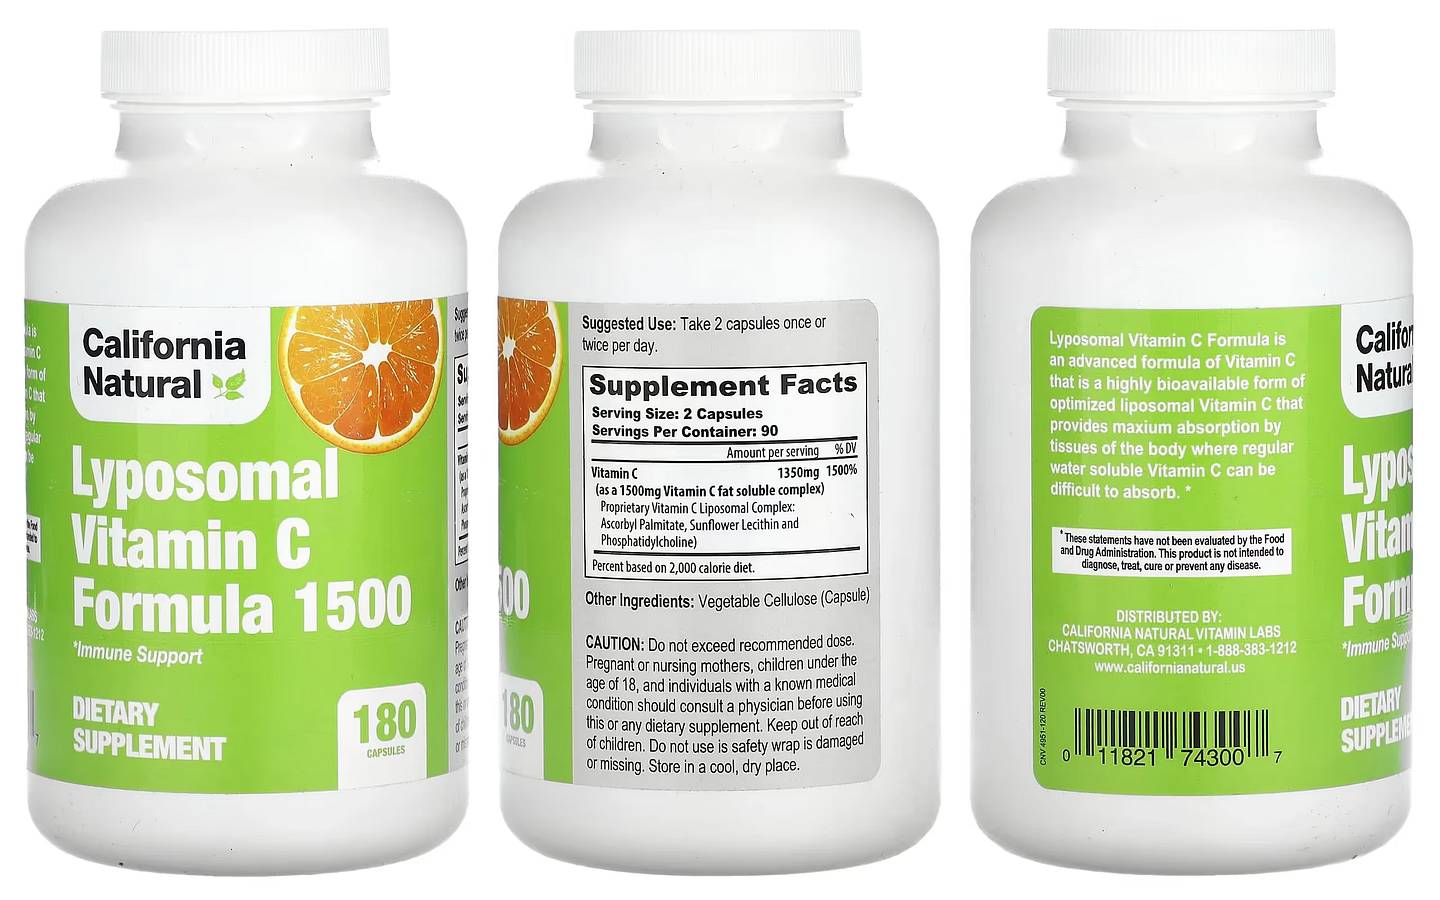 California Natural, Lyposomal Vitamin C Formula 1500 packaging